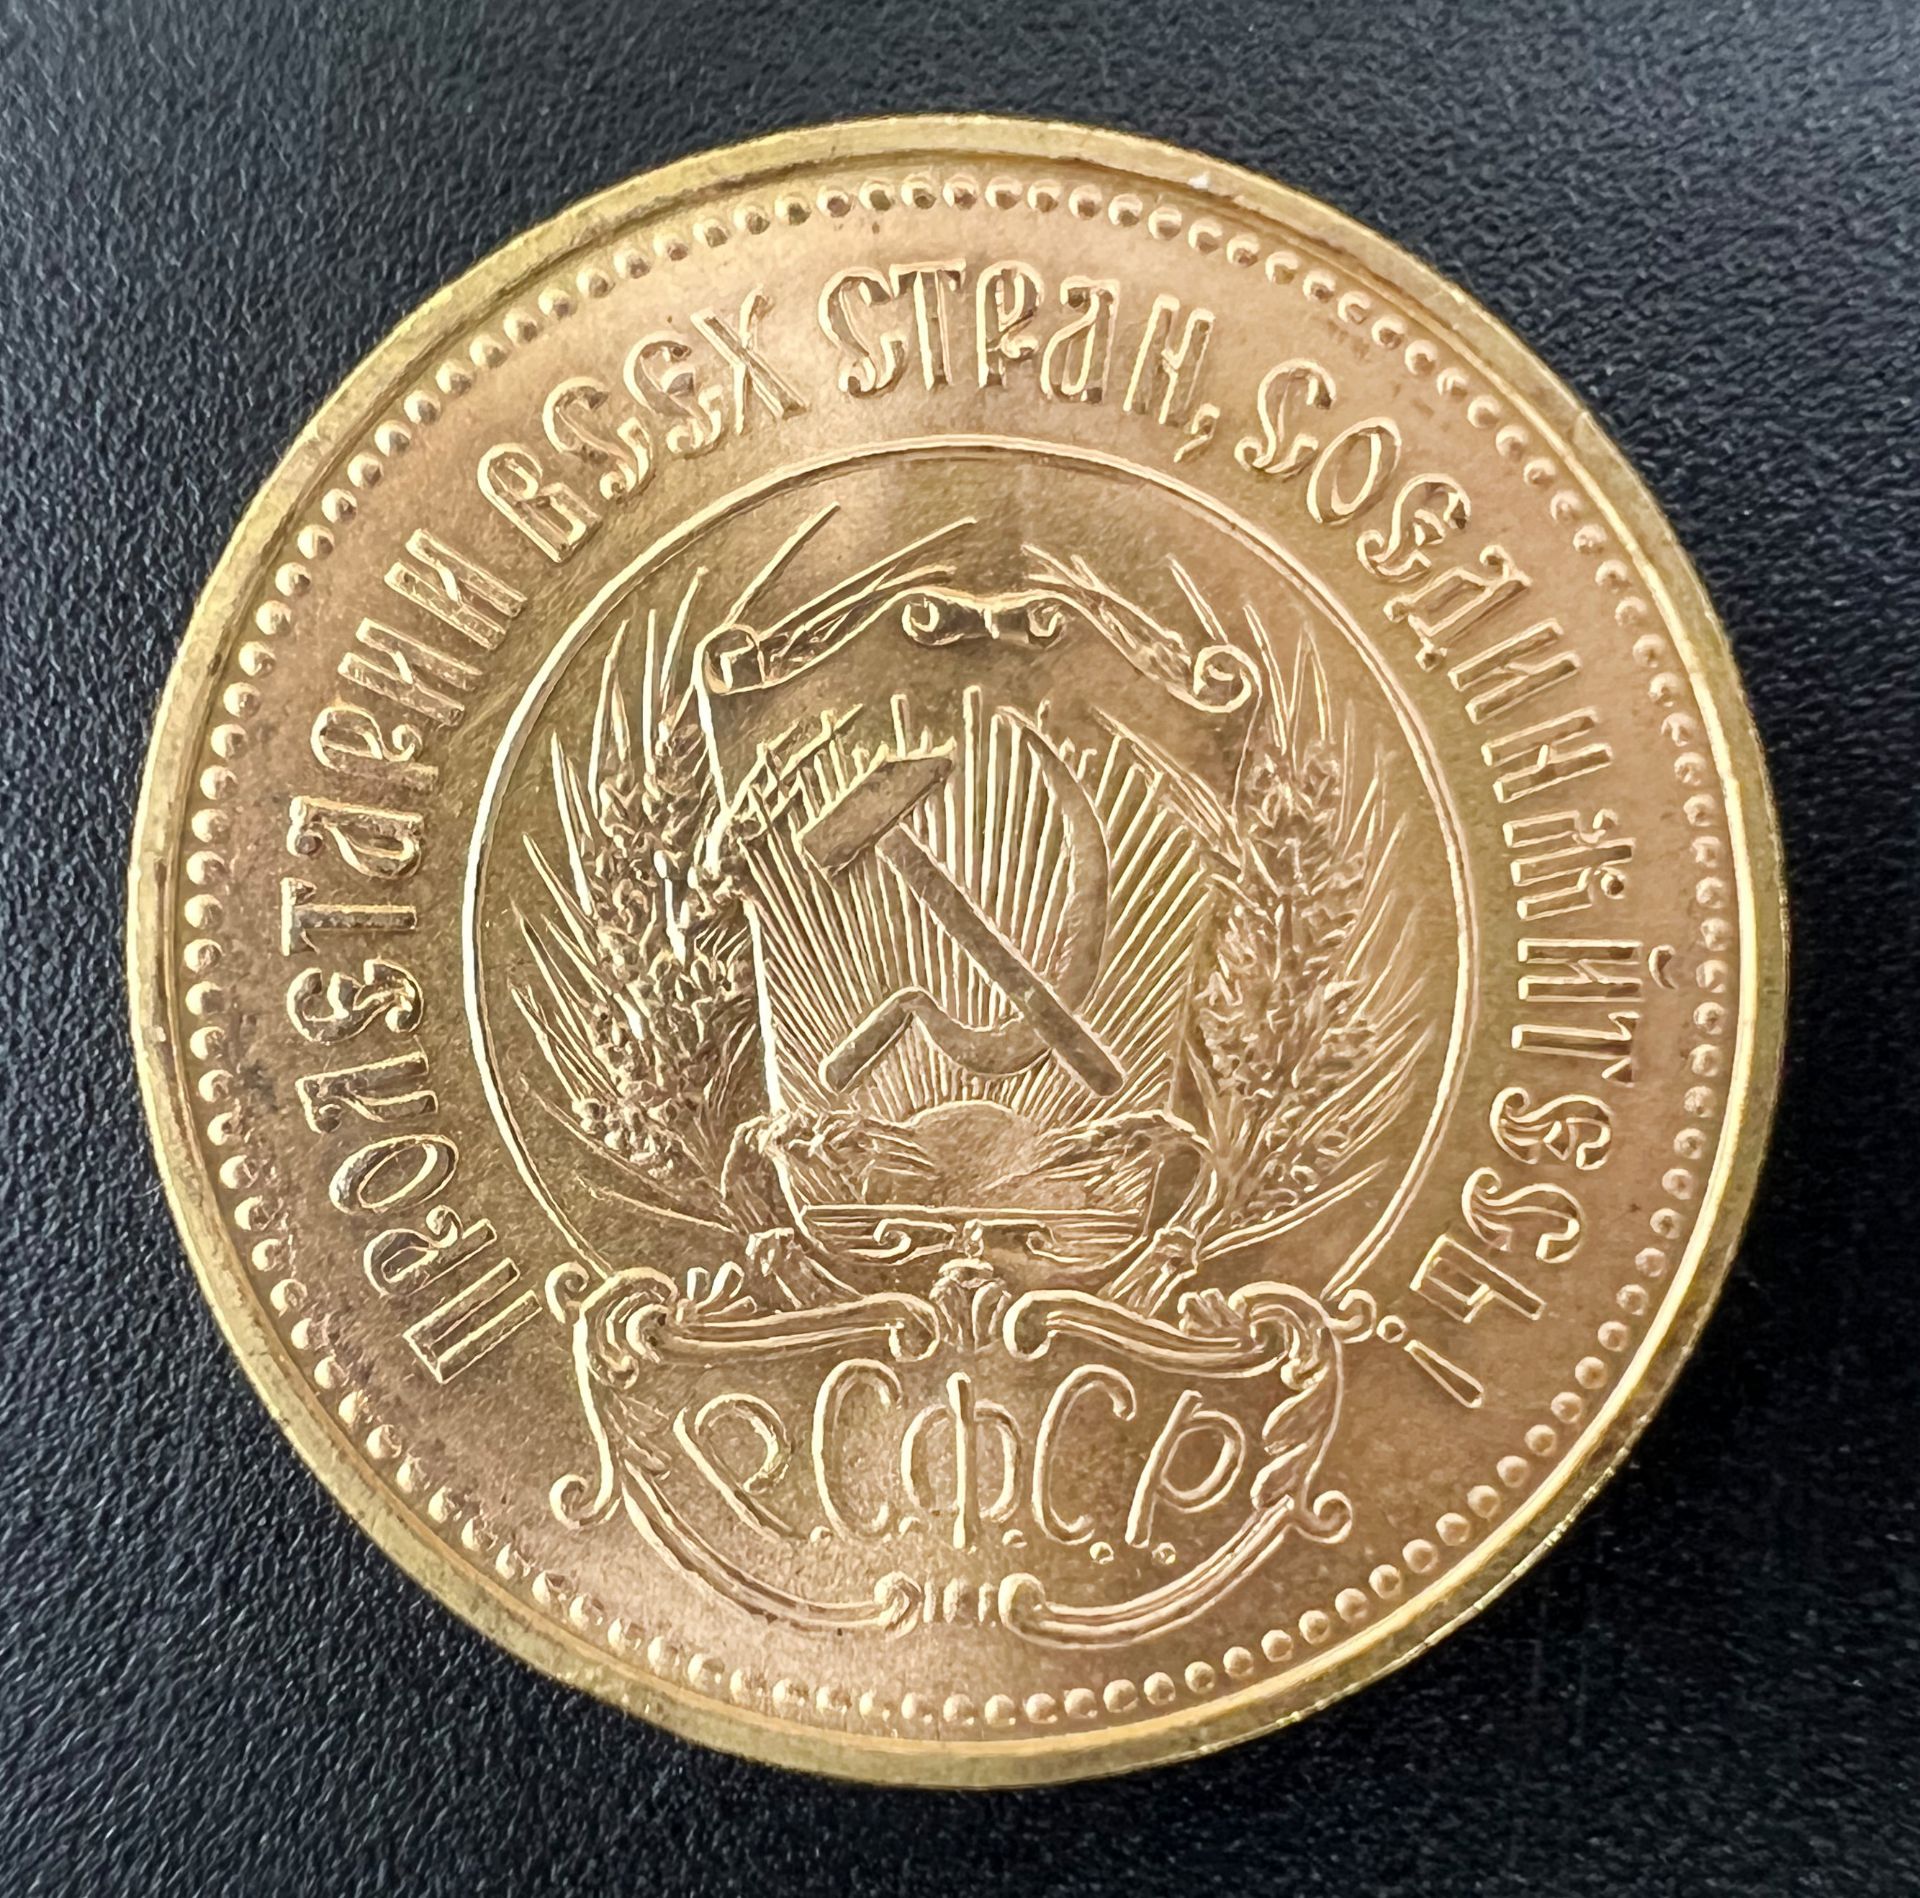 Goldmünze 1 Tscherwonetz. Sowjetunion 1976. 900 Gold. - Bild 2 aus 4